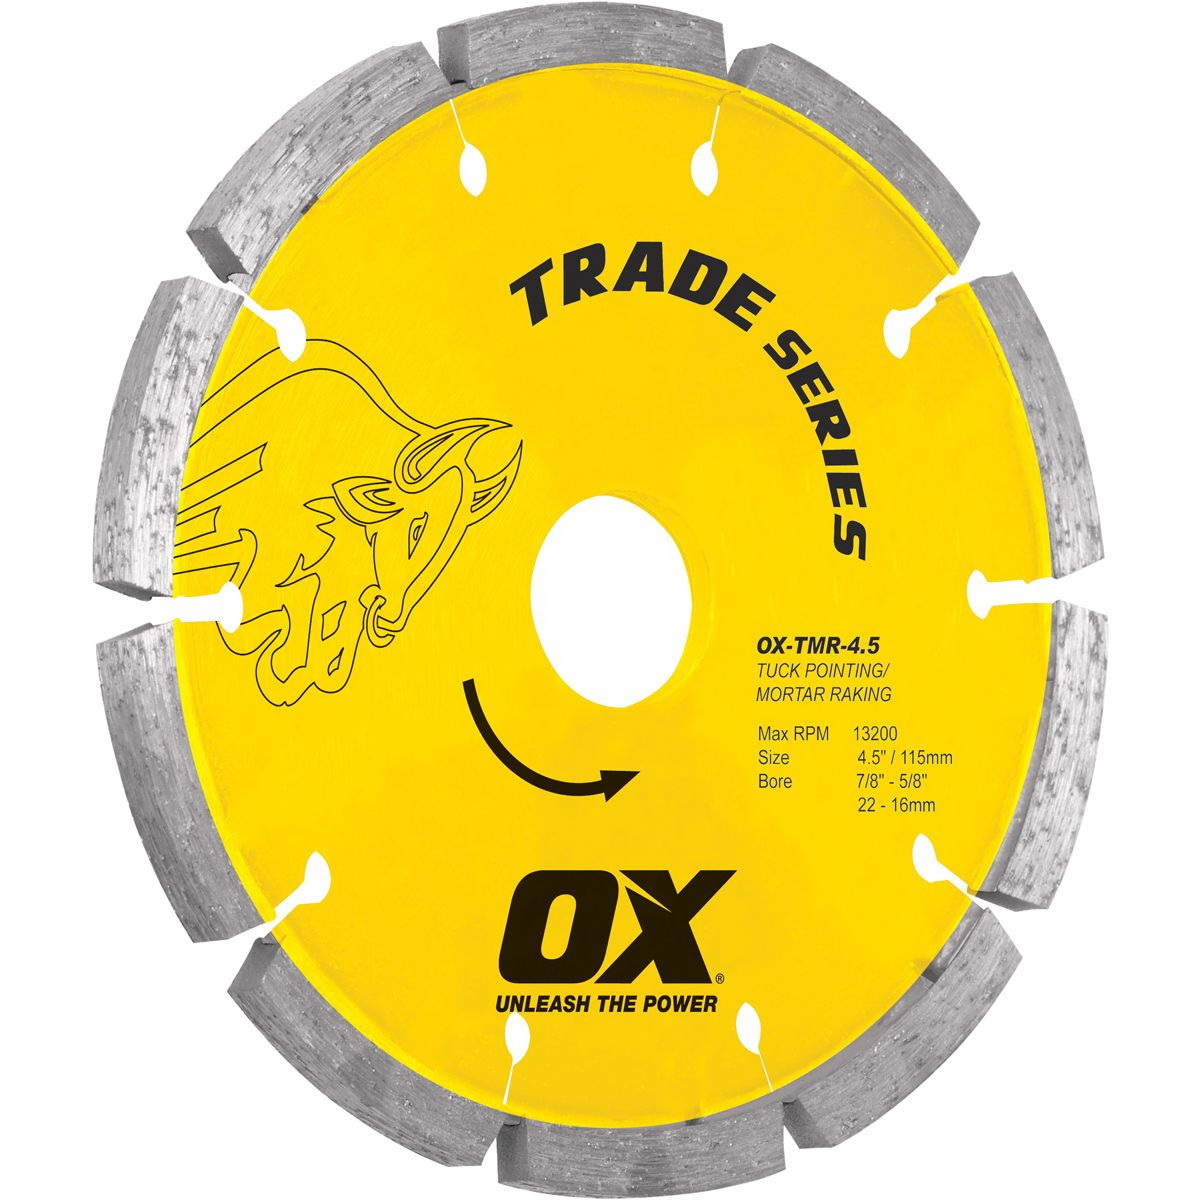 Ox OX-TMR-4.5